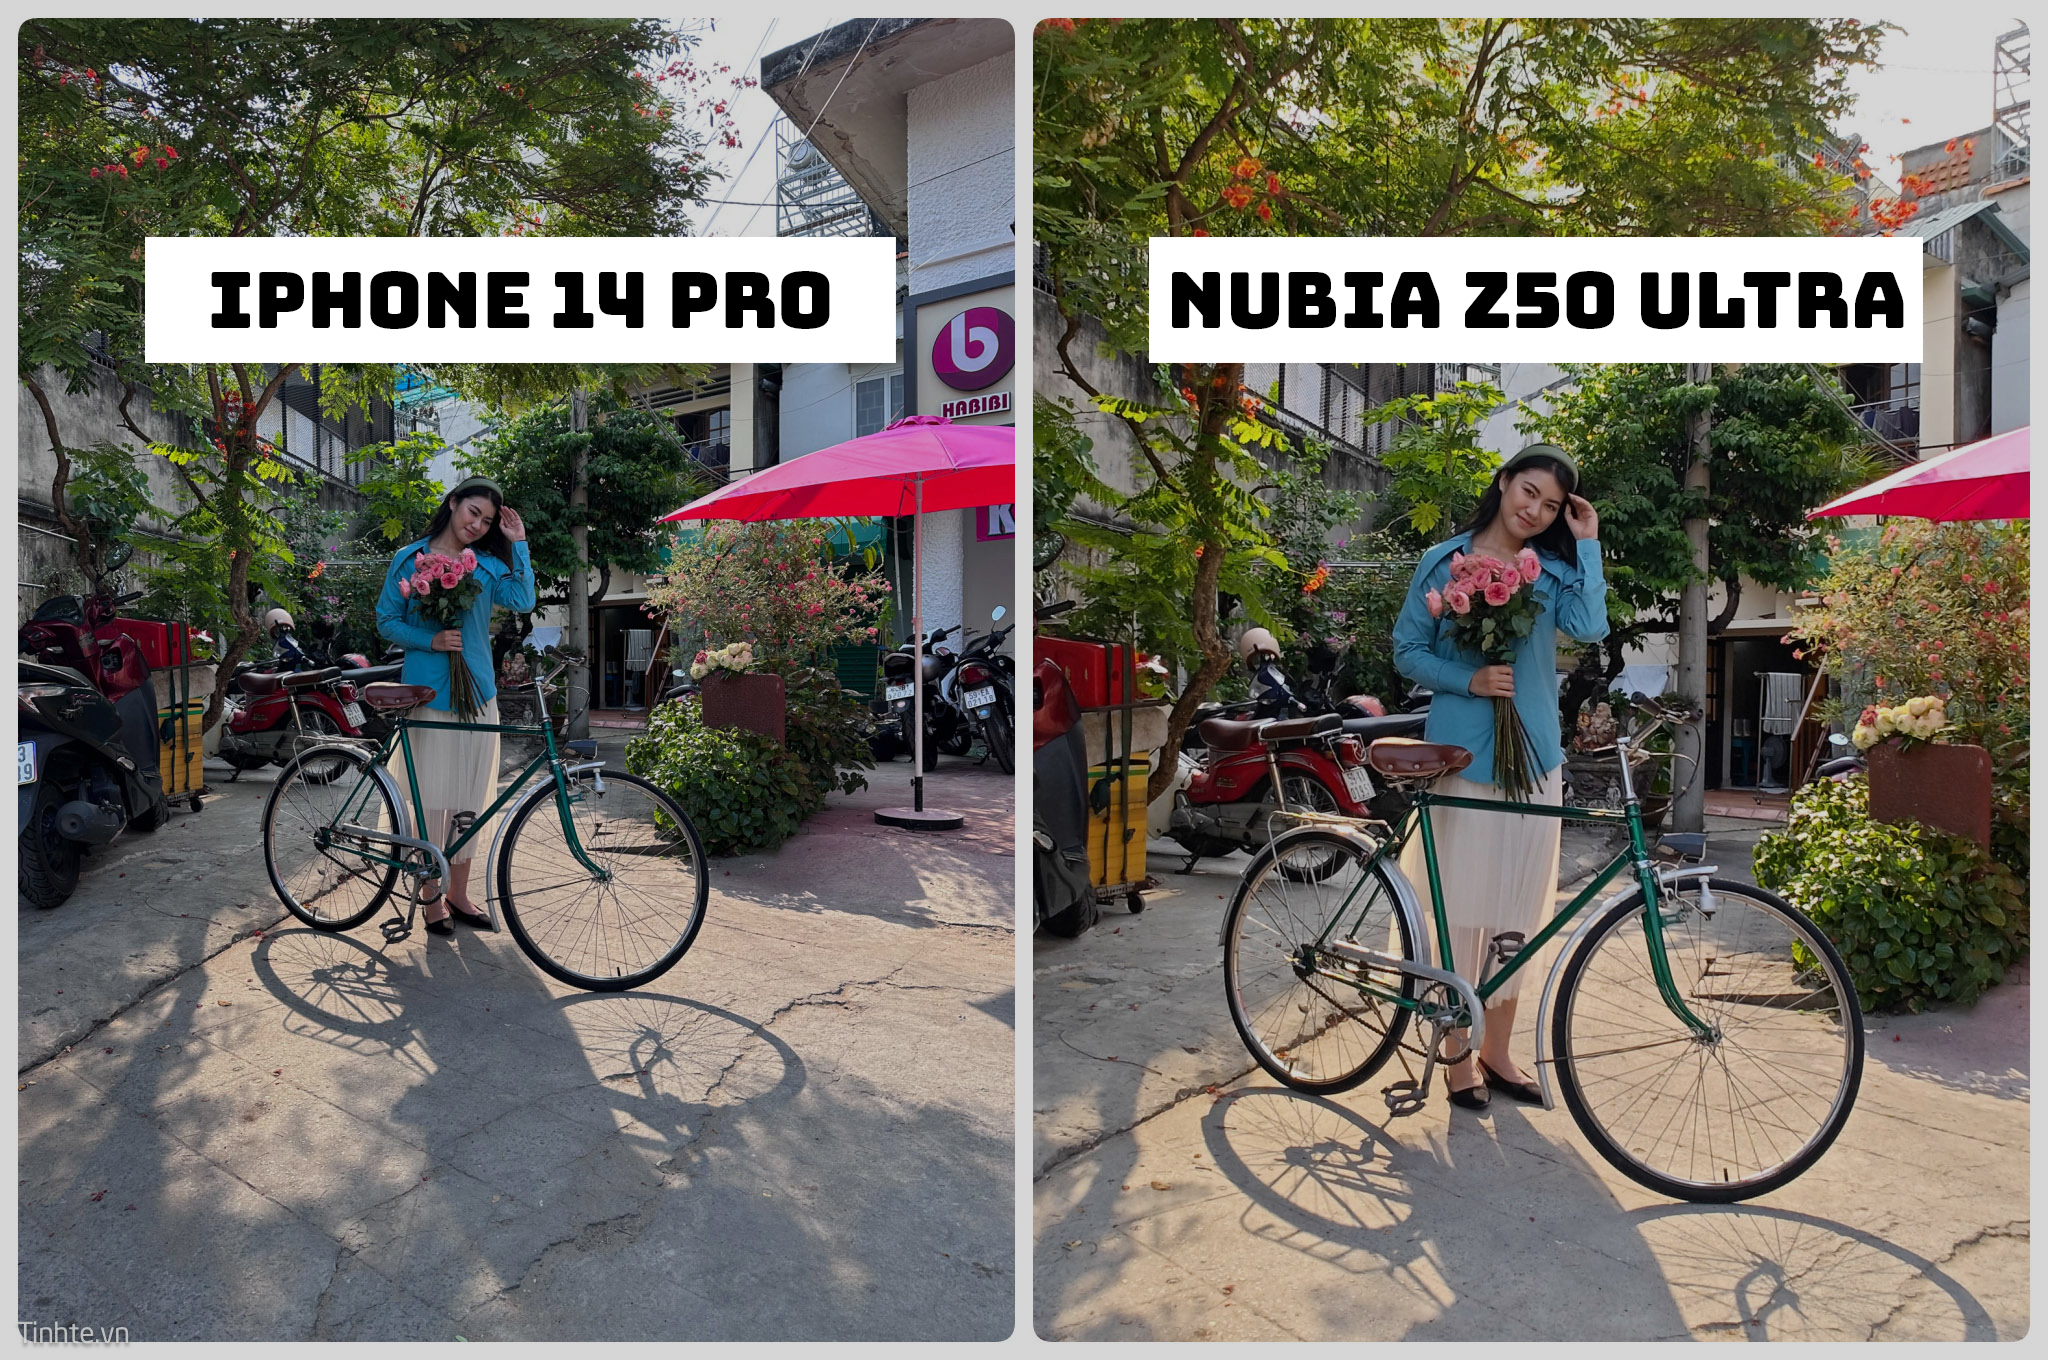 Tiêu cự 35mm trên camera của Nubia thực sự giá trị, so sánh với 24mm trên iPhone 14 Pro Max